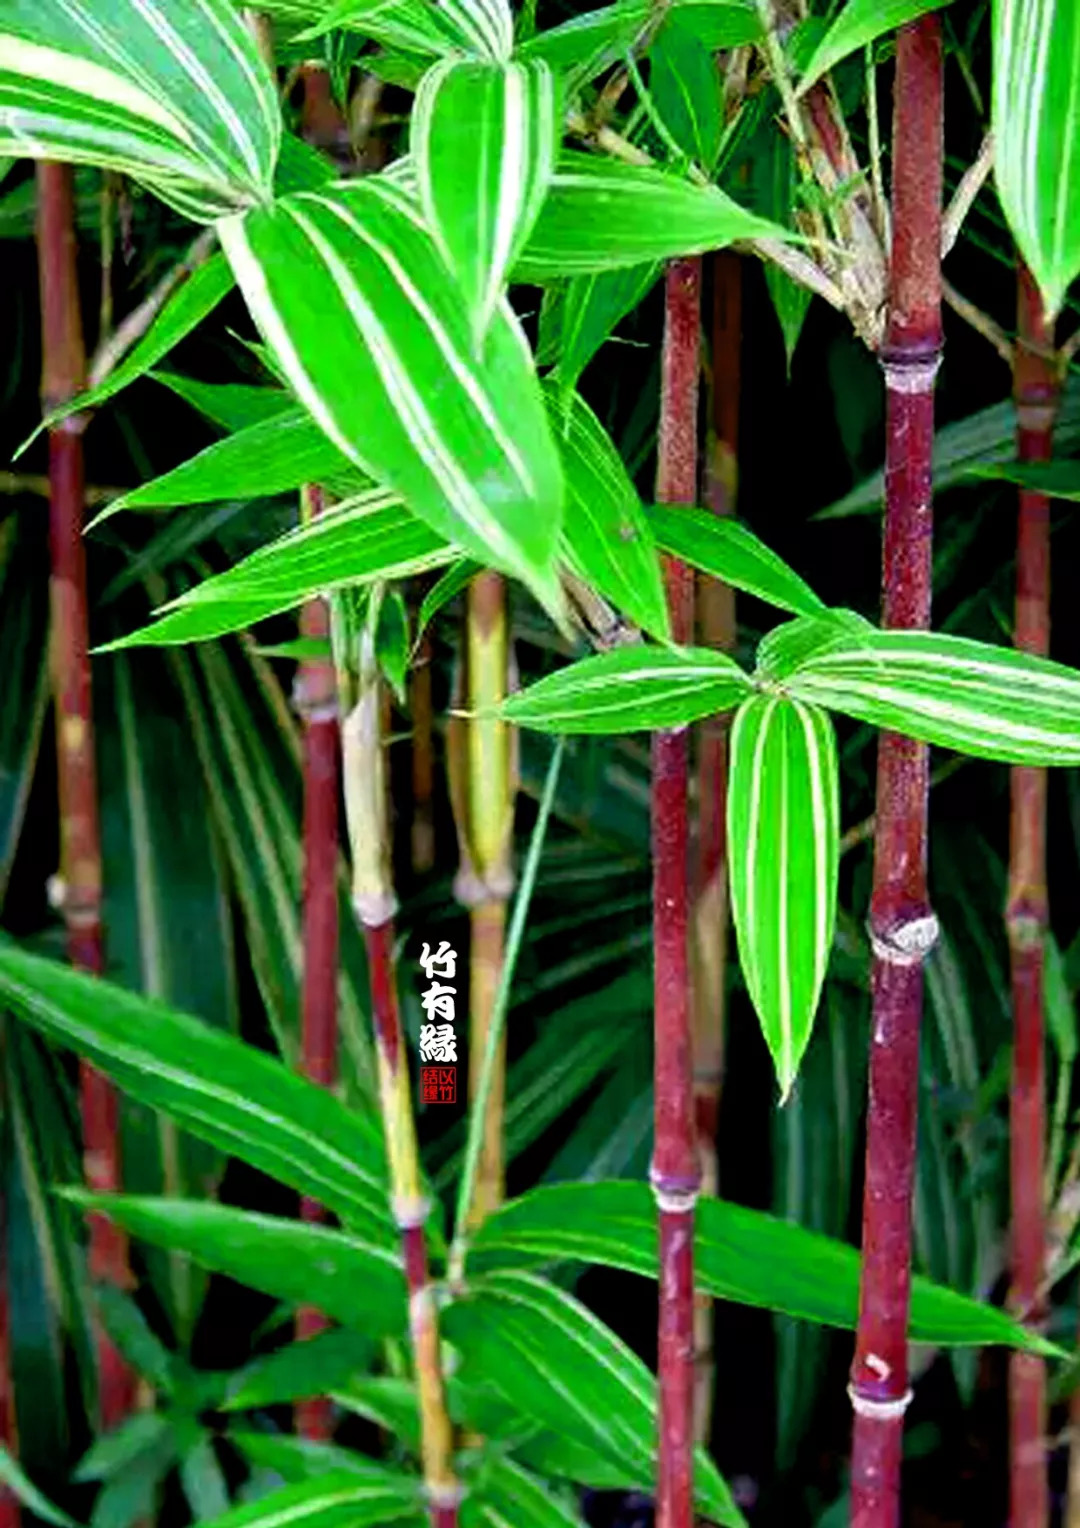 竹杆为紫红色 叶片有不规则金色条纹 竹高1米～2米,苦竹属新变异竹子